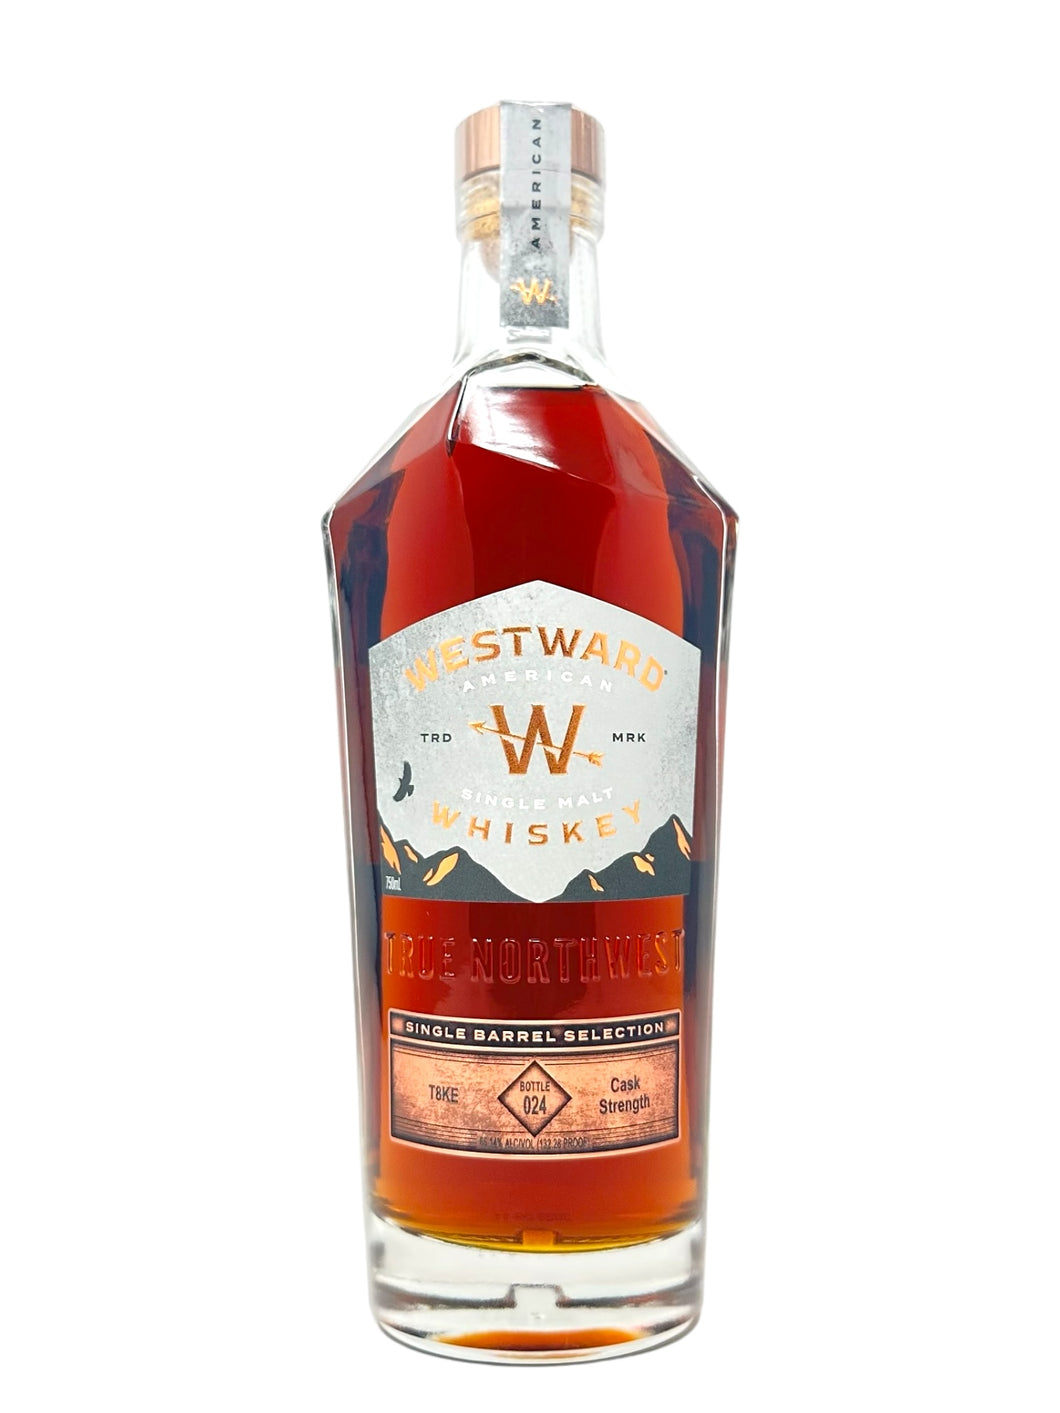 Westward Whiskey Single Barrel 132.28 proof #486 - selected by T8ke